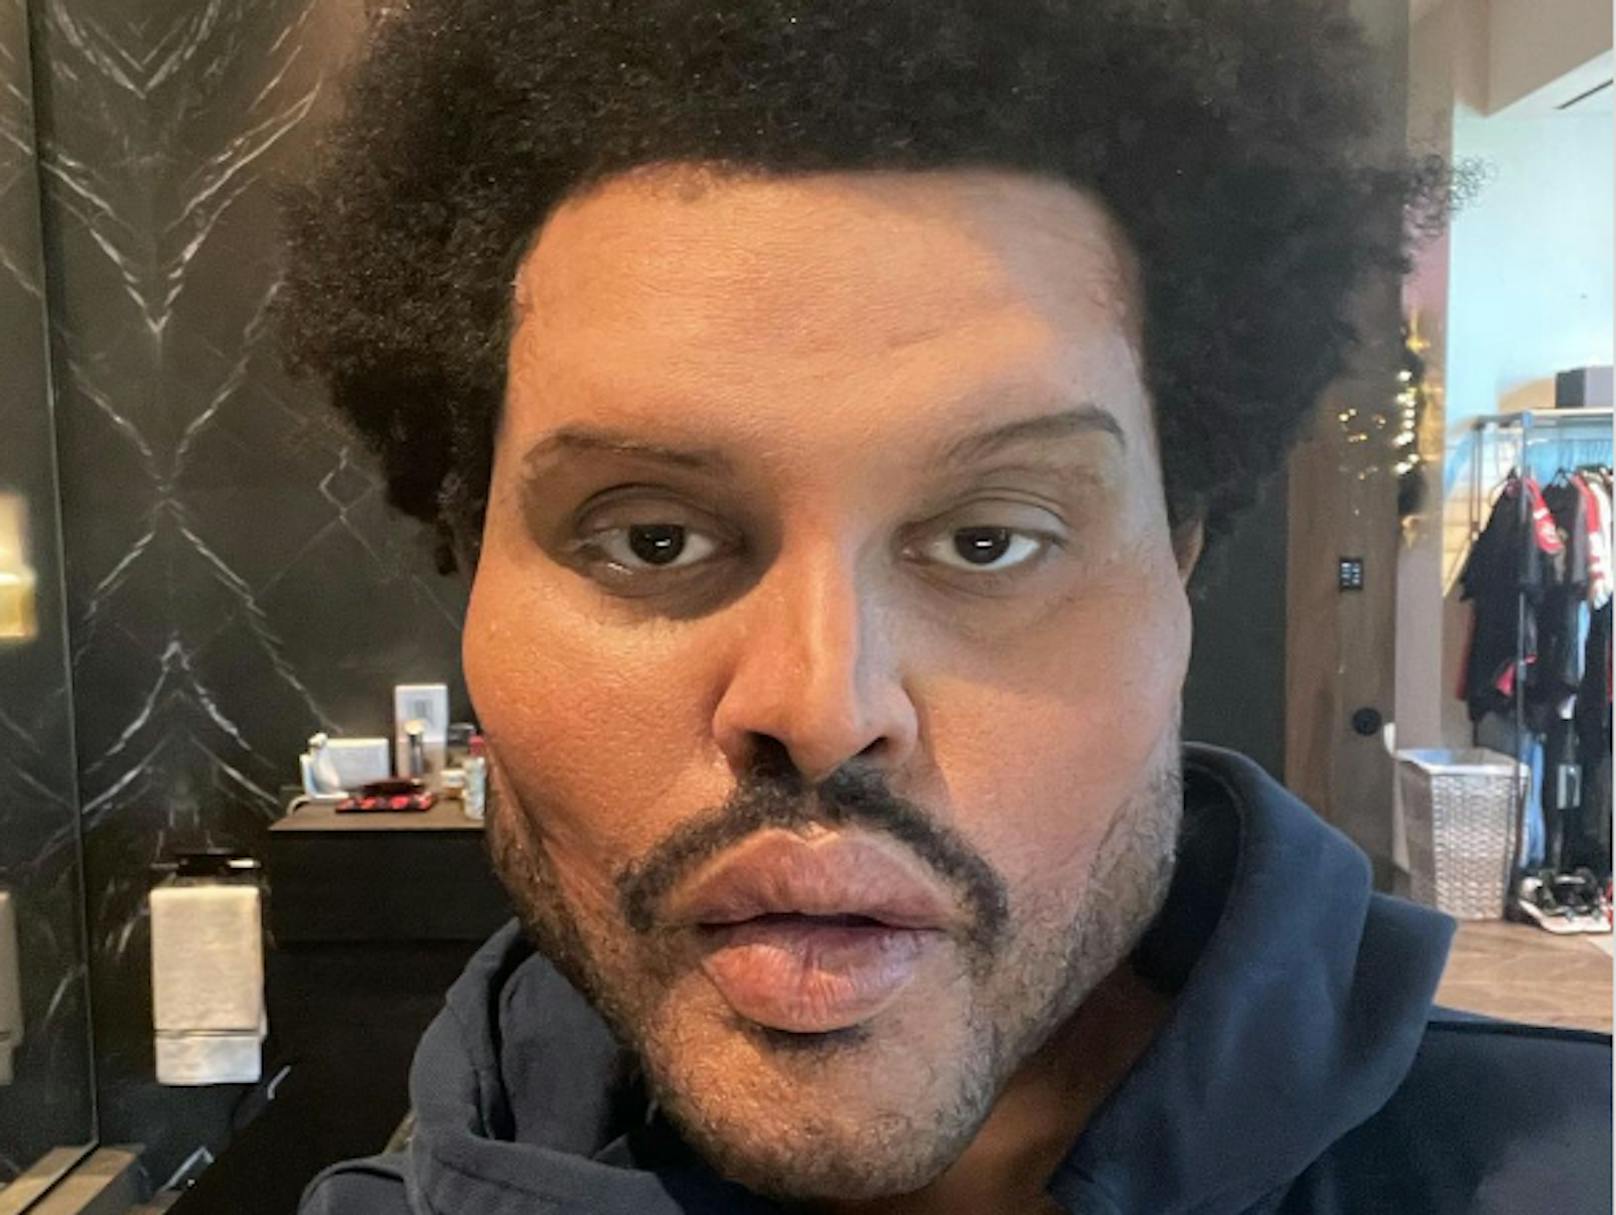 Sänger The Weeknd sorgt mit diesem Selfie für Entsetzen. Hat sich der Sänger für sein neues Musikvideo sein Gesicht tatsächlich mit Schönheits-OPs entstellt?<br>